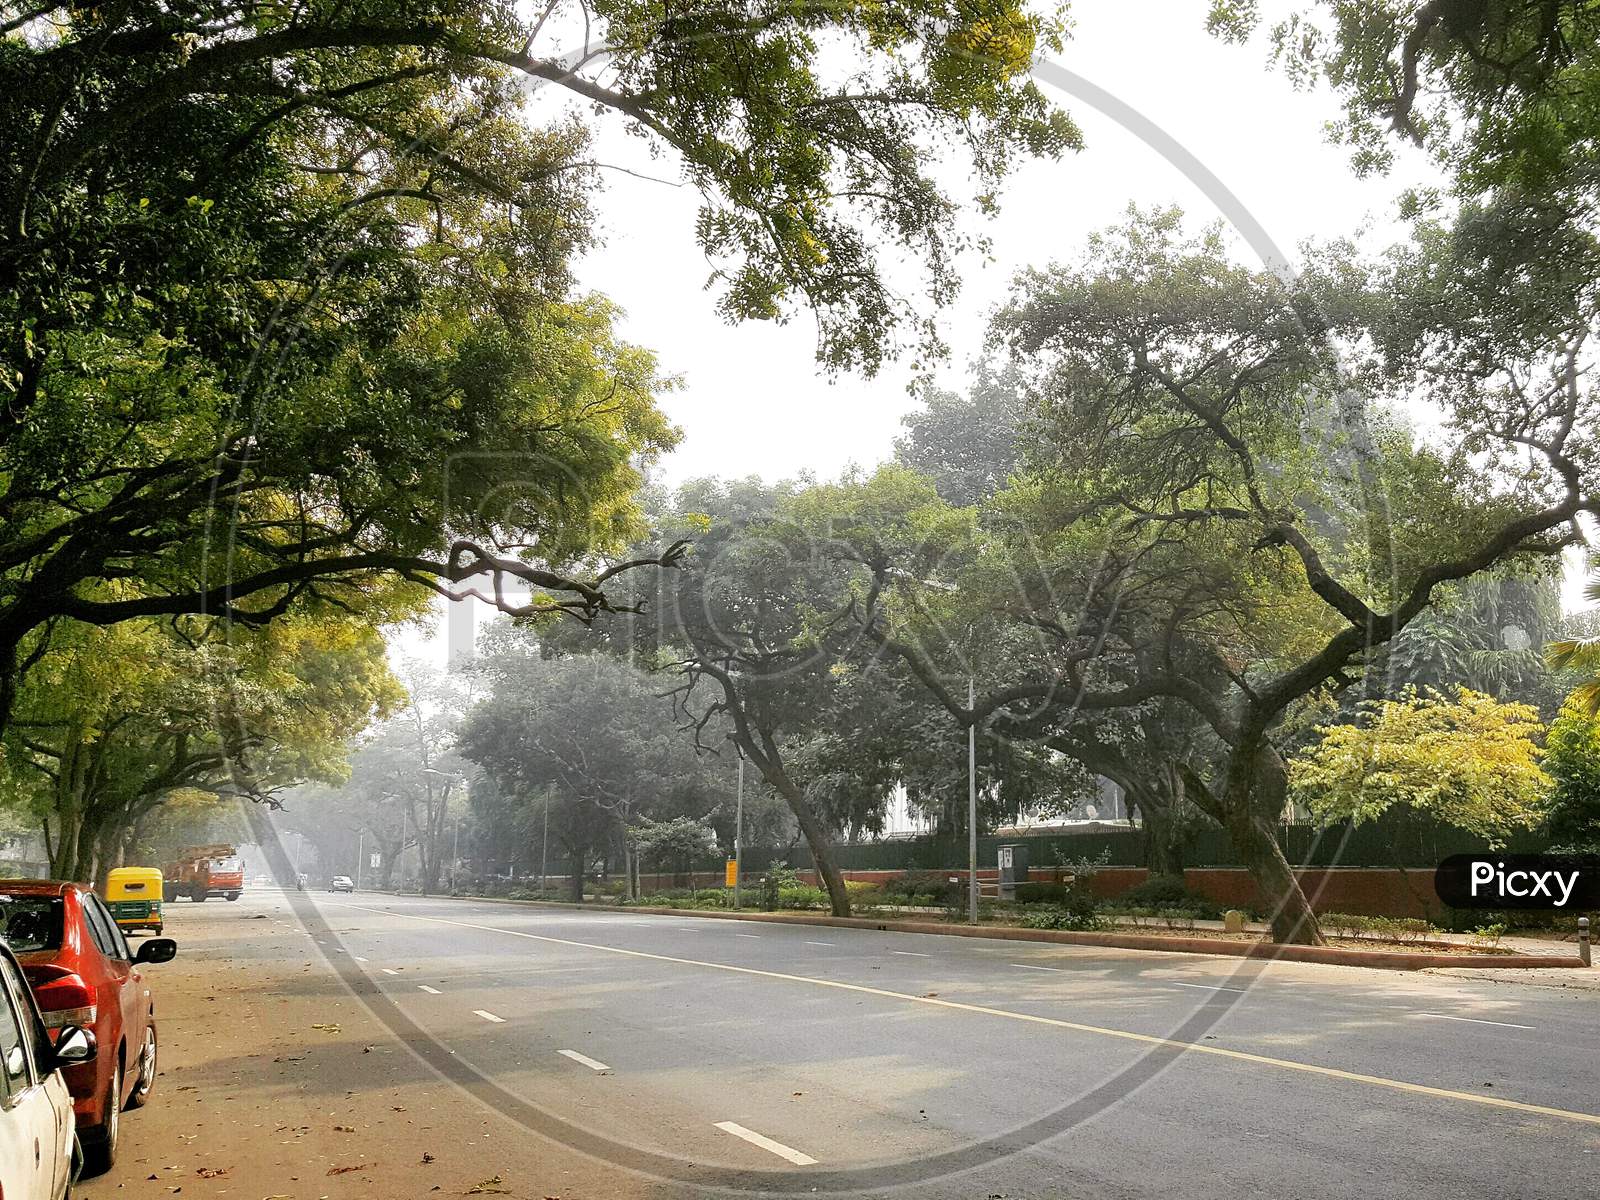 Delhi roads